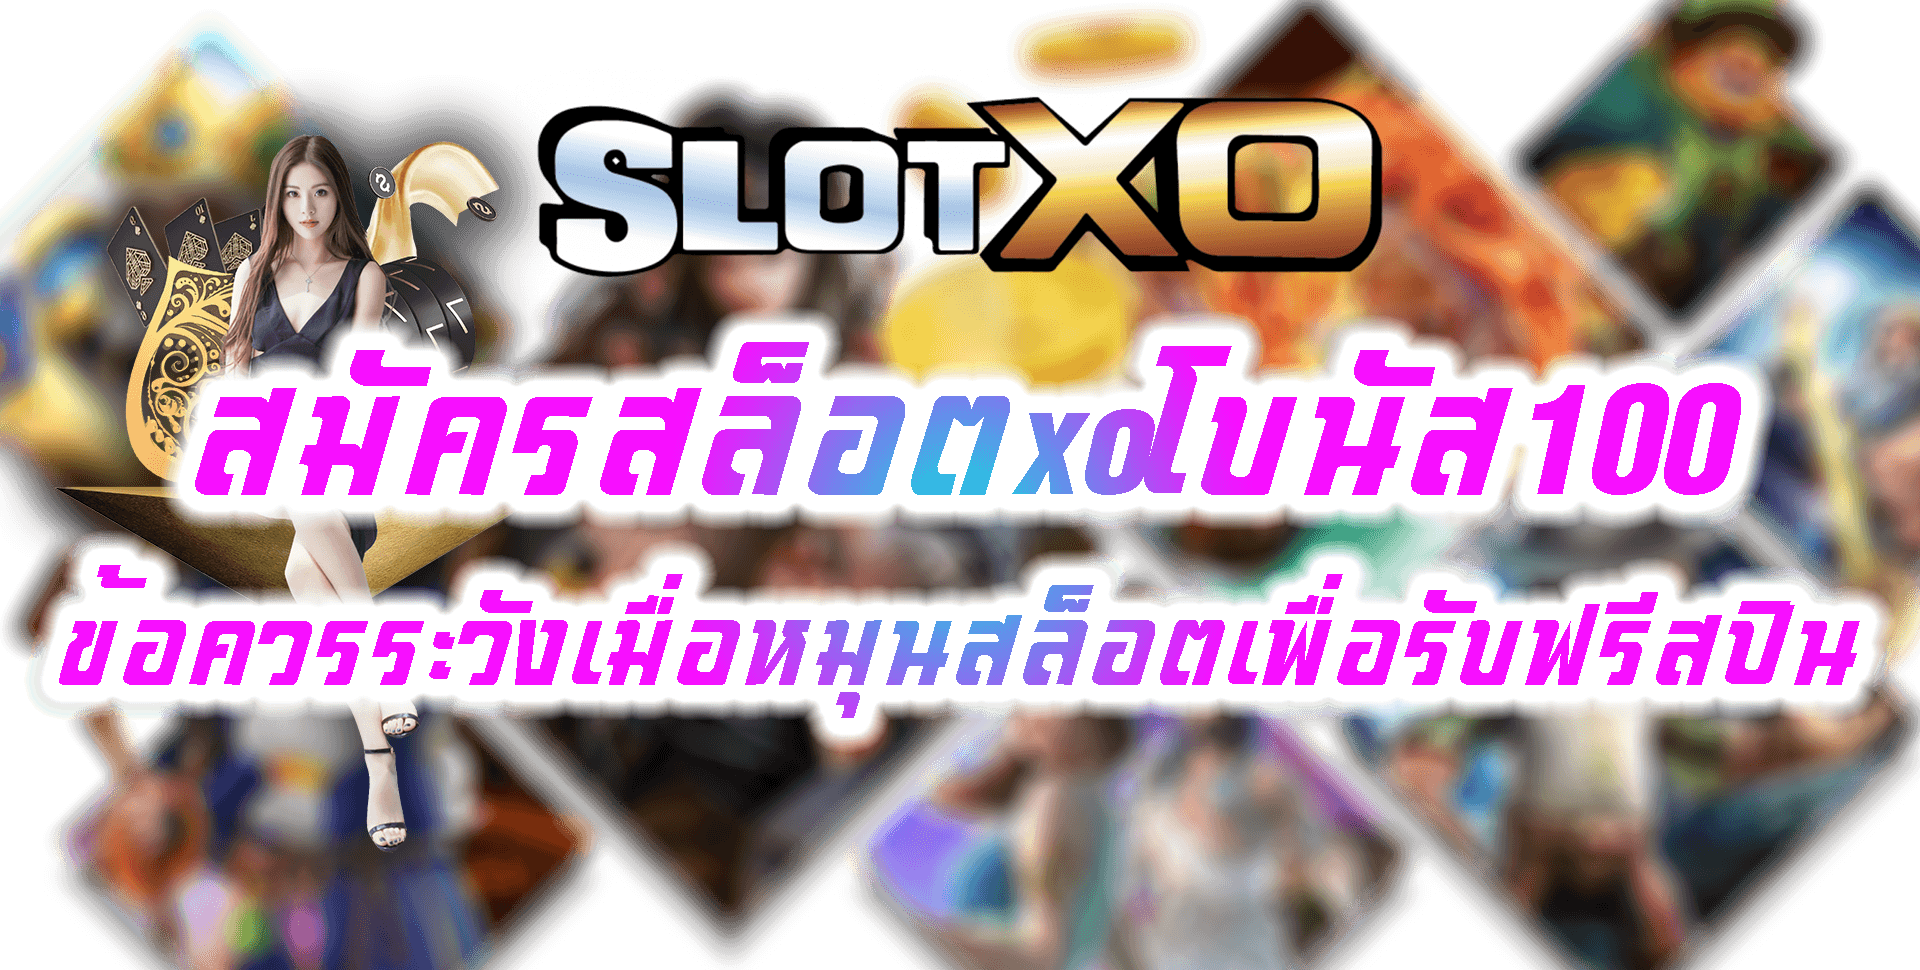 SLOT XO สมัครสล็อตxoโบนัส100 Free รวมเว็บสล็อต ออ โต้ 2022